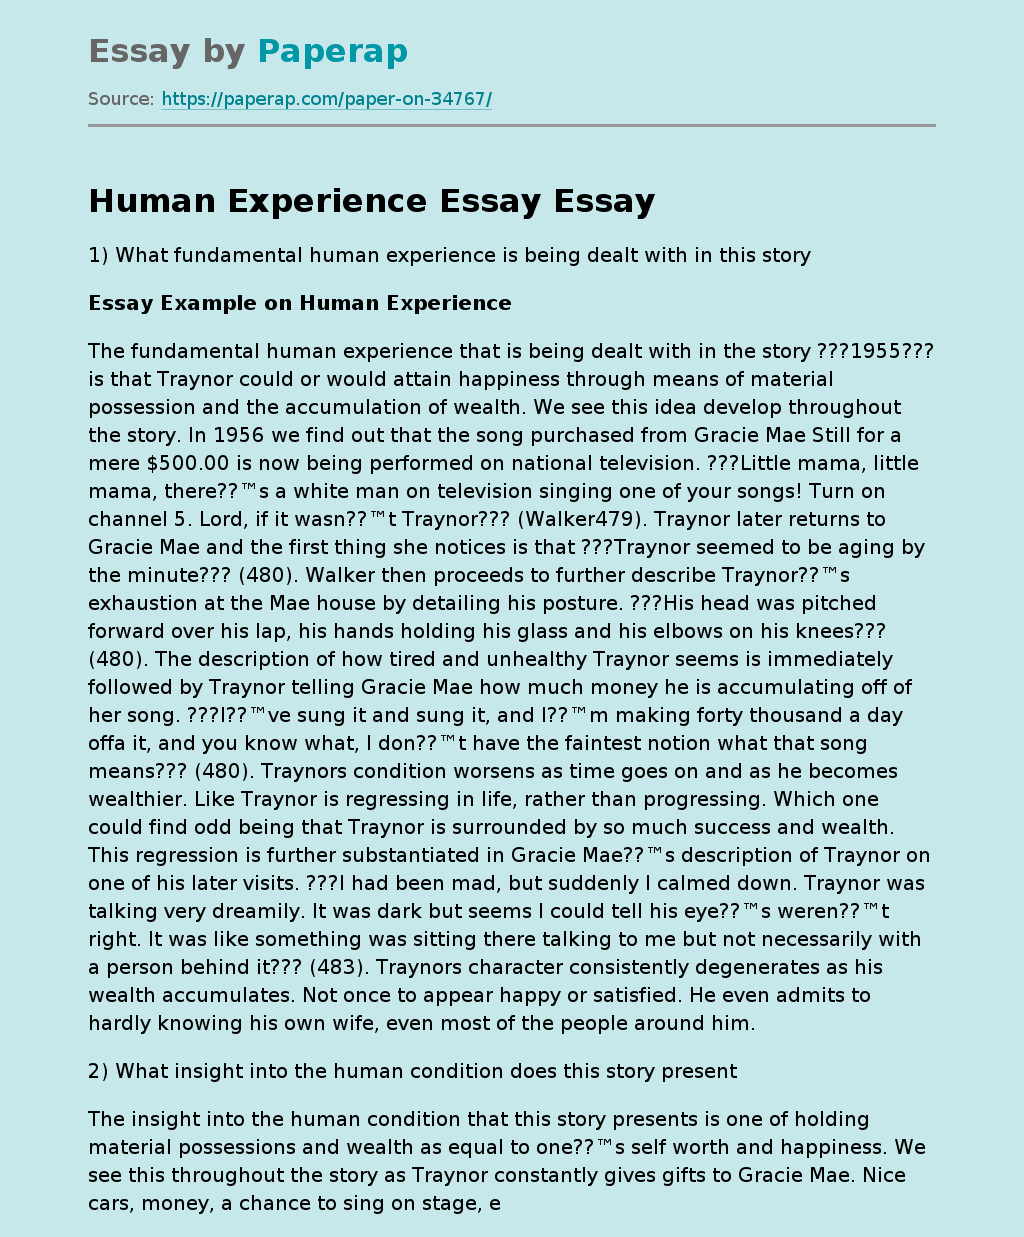 Human Experience Essay